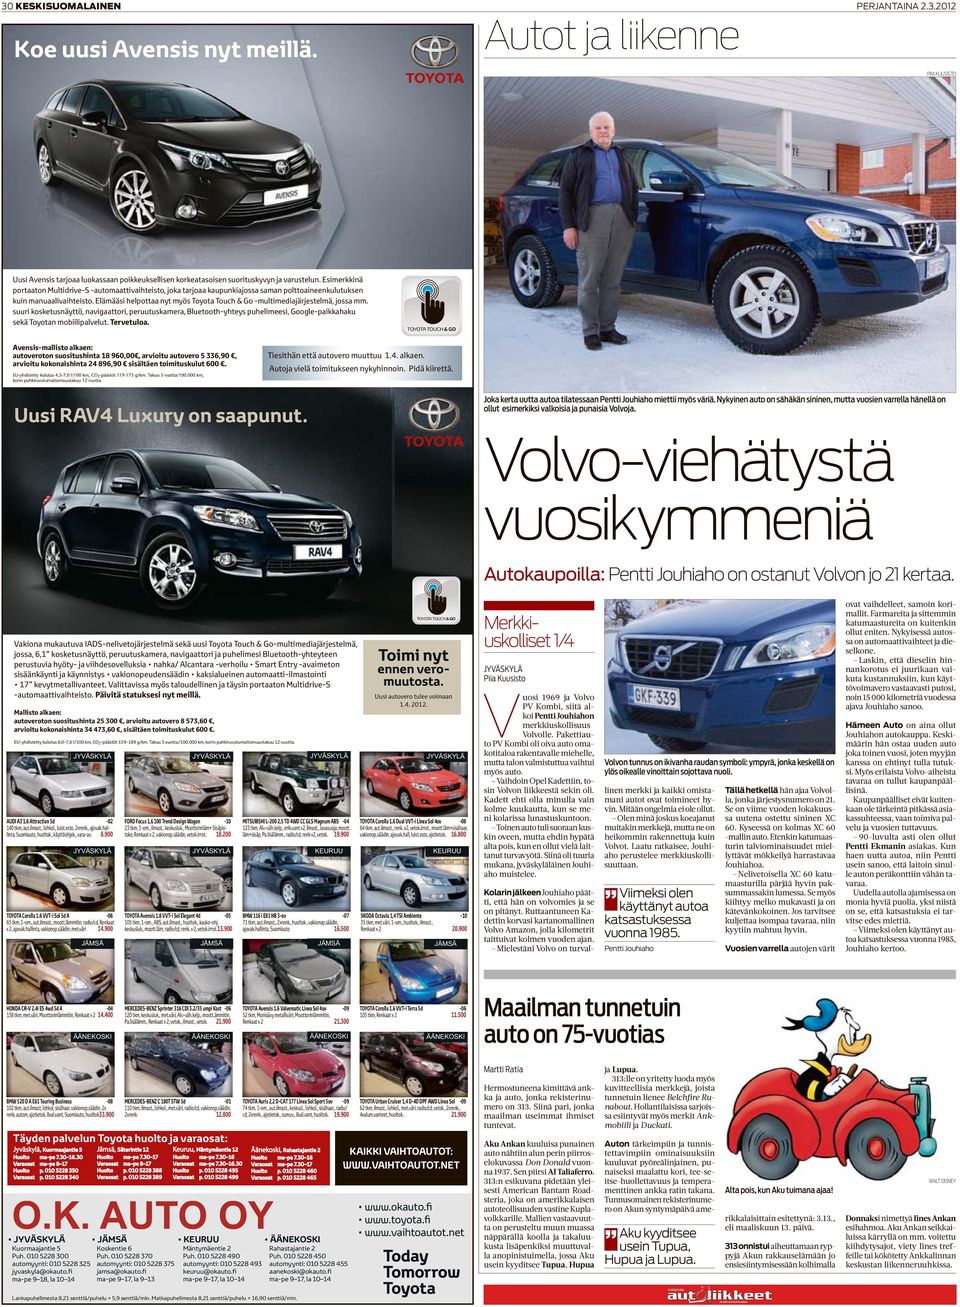 Volvo-viehätystä vuosikymmeniä Autokaupoilla: Pentti Jouhiaho on ostanut Volvon jo 21 kertaa.